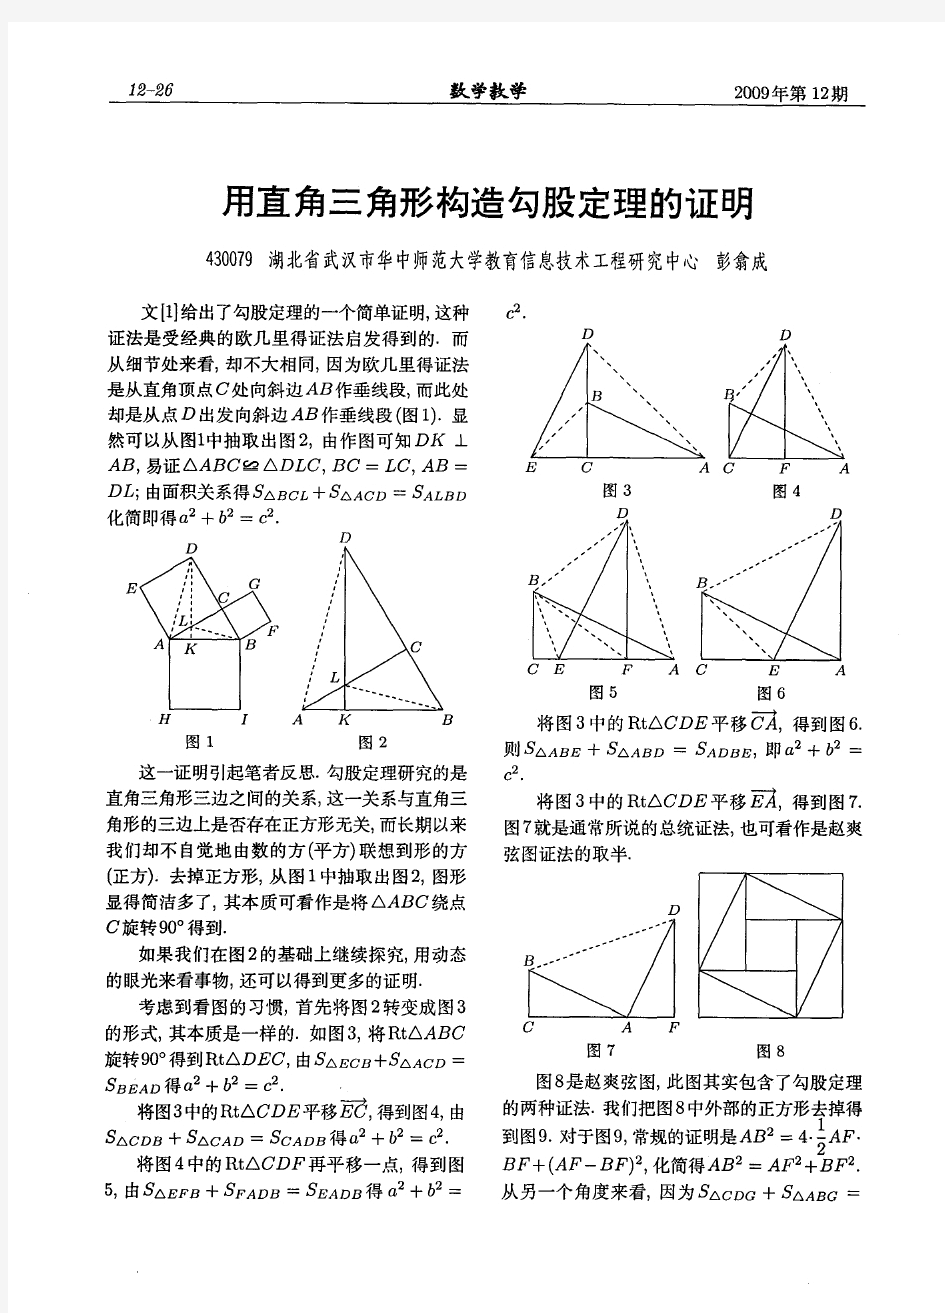 用直角三角形构造勾股定理的证明